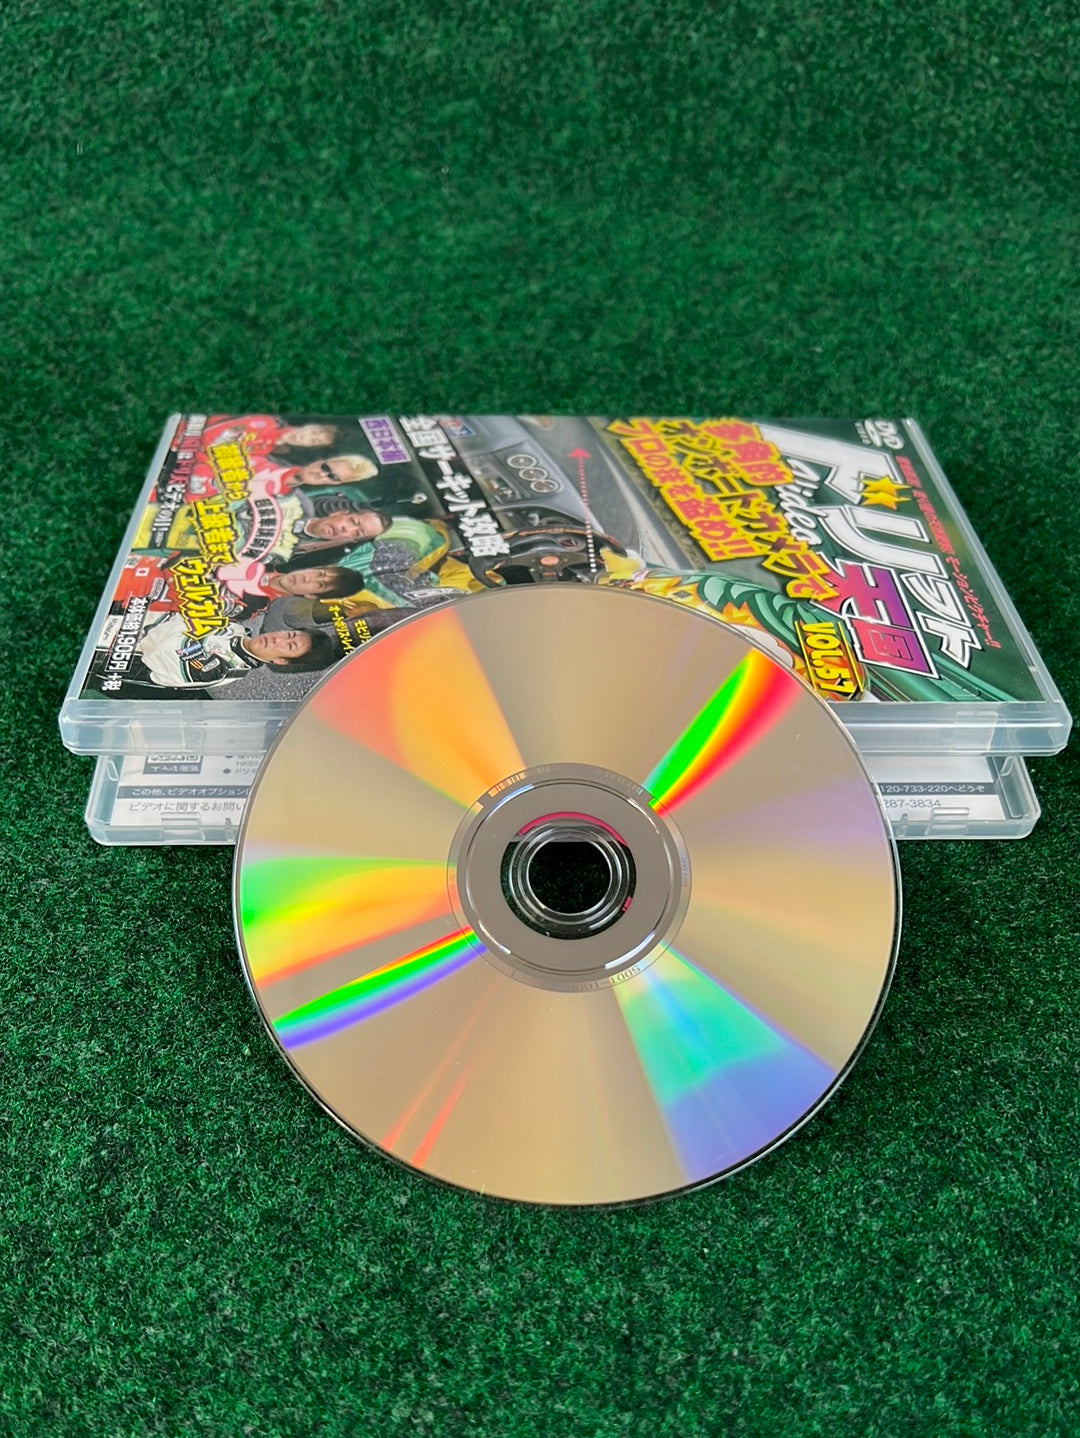 Drift Tengoku DVD - Vol. 57 DVD